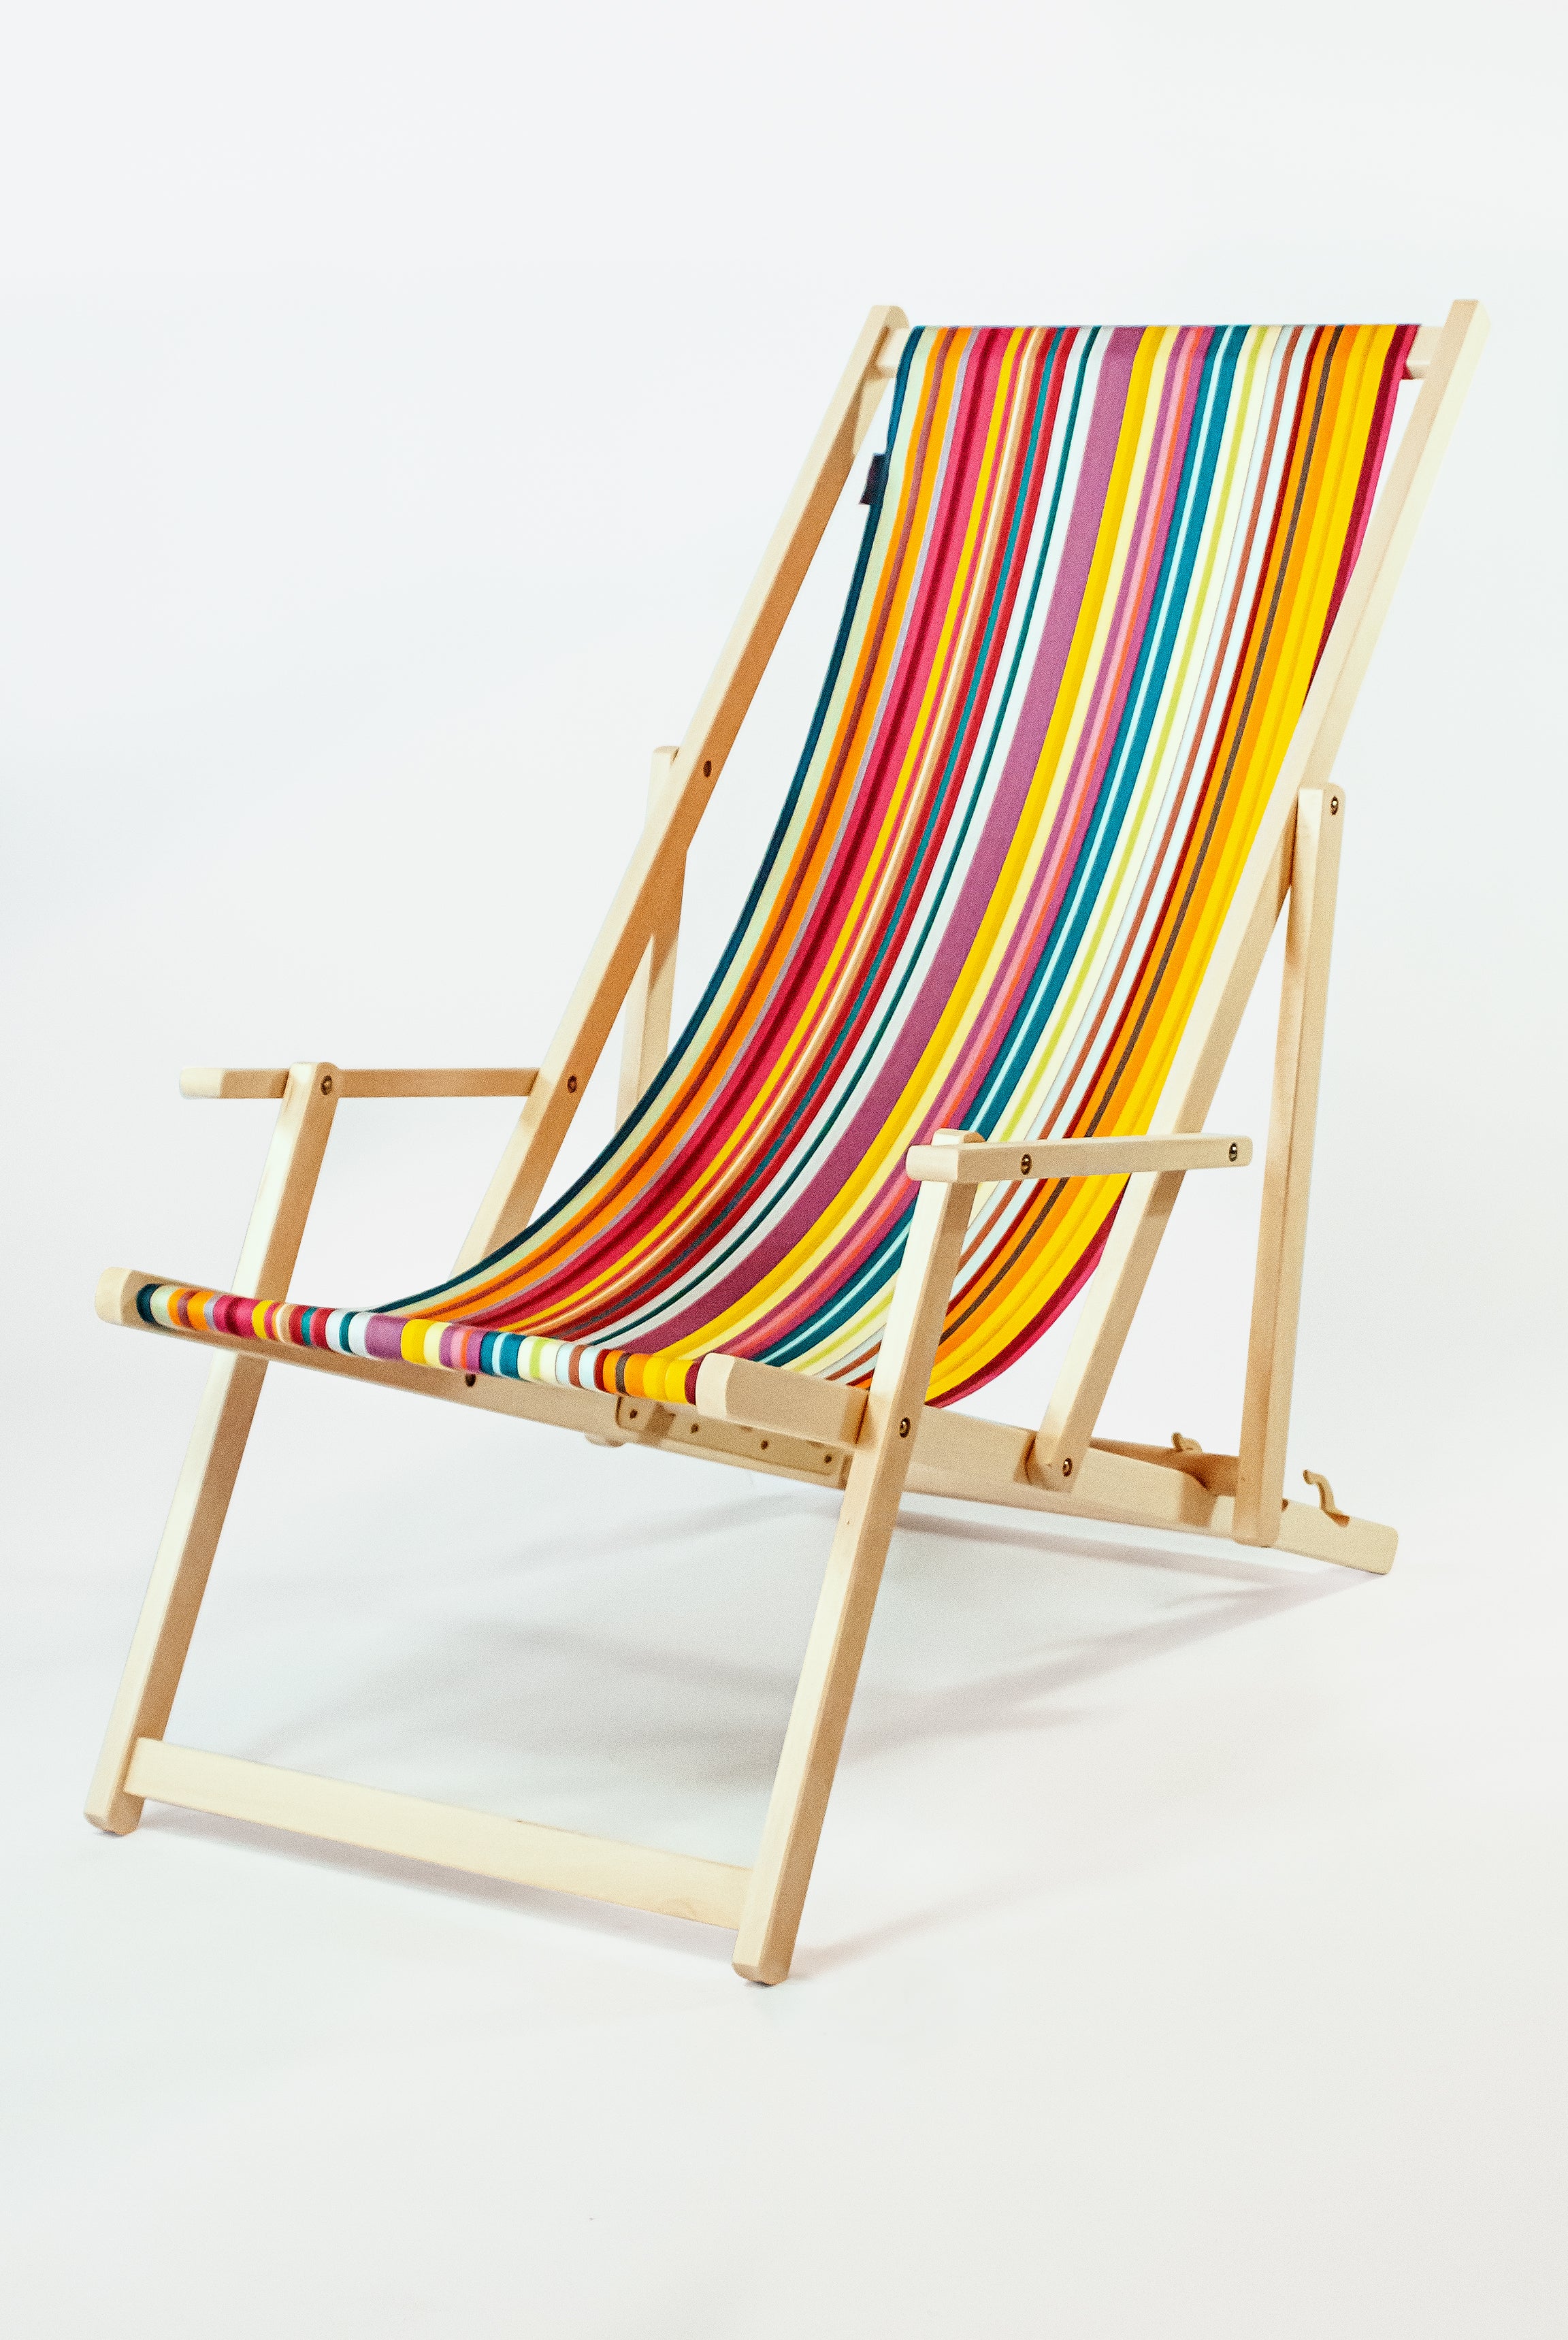 zweep Relatie bungeejumpen houten strandstoel met armleuning en outdoor loper - kleurmeester.nl –  Kleurmeester.nl